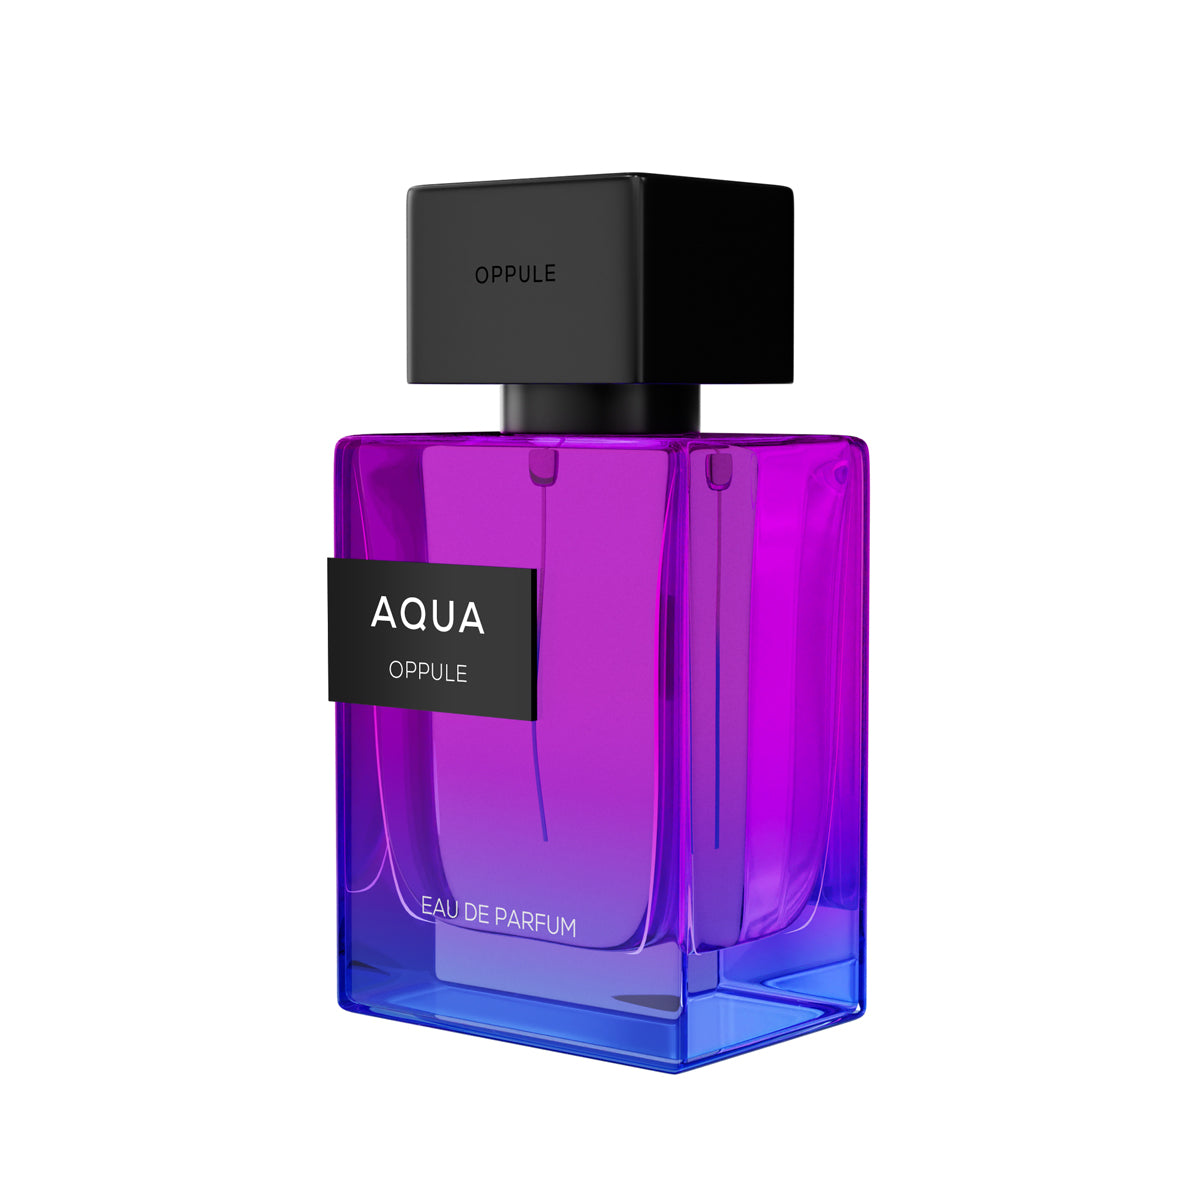 Oppule Aqua - For Girls